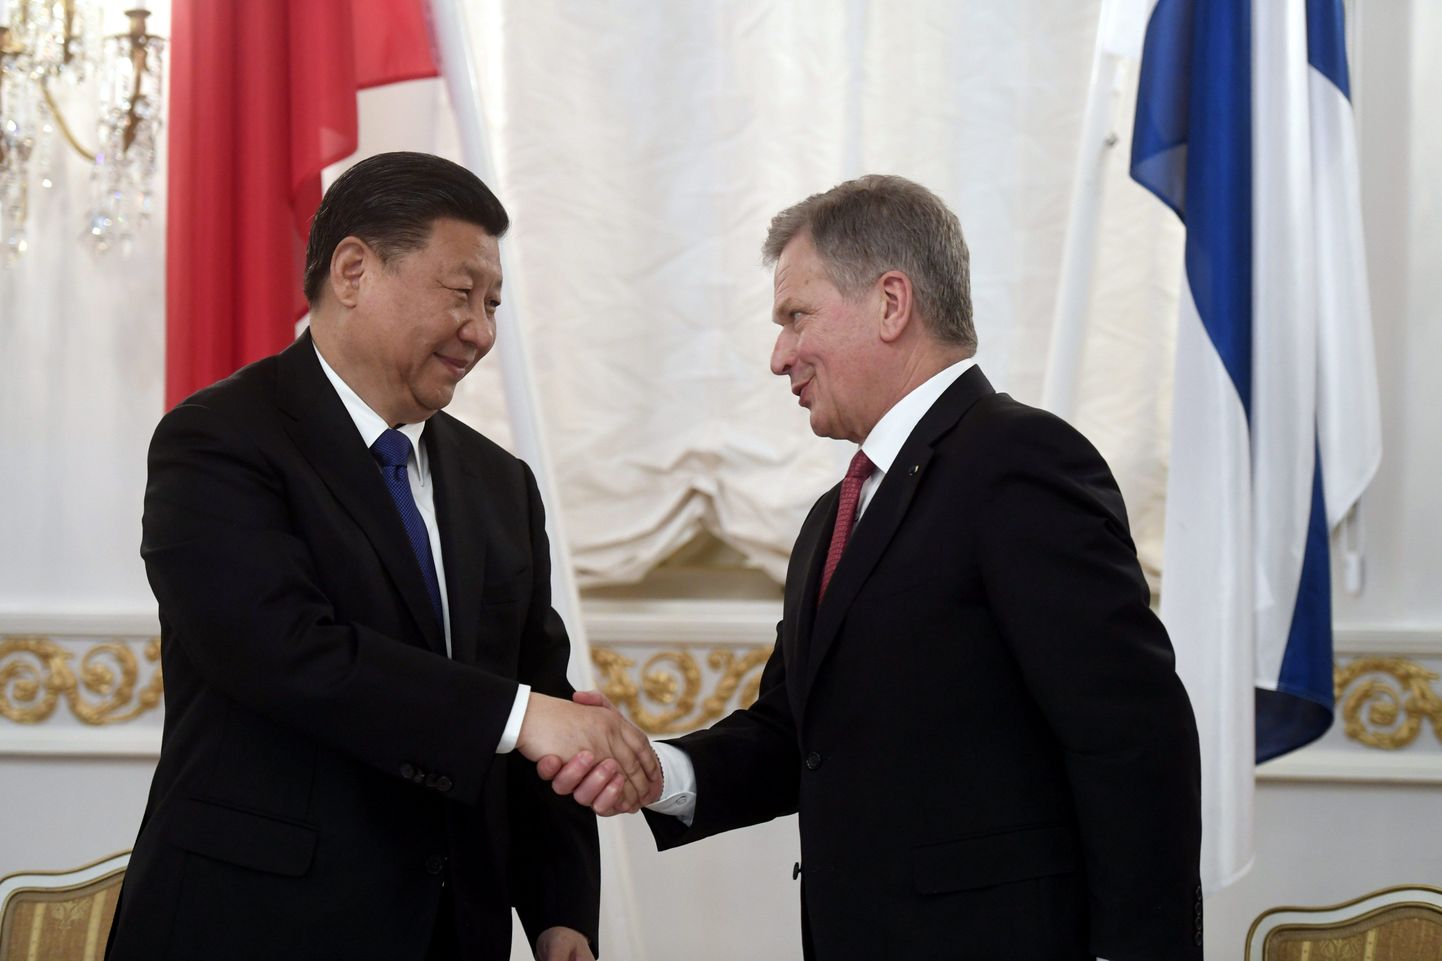 Hiina presidendi Xi Jinpingi ja Soome presidendi Sauli Niinistö kohtumine.